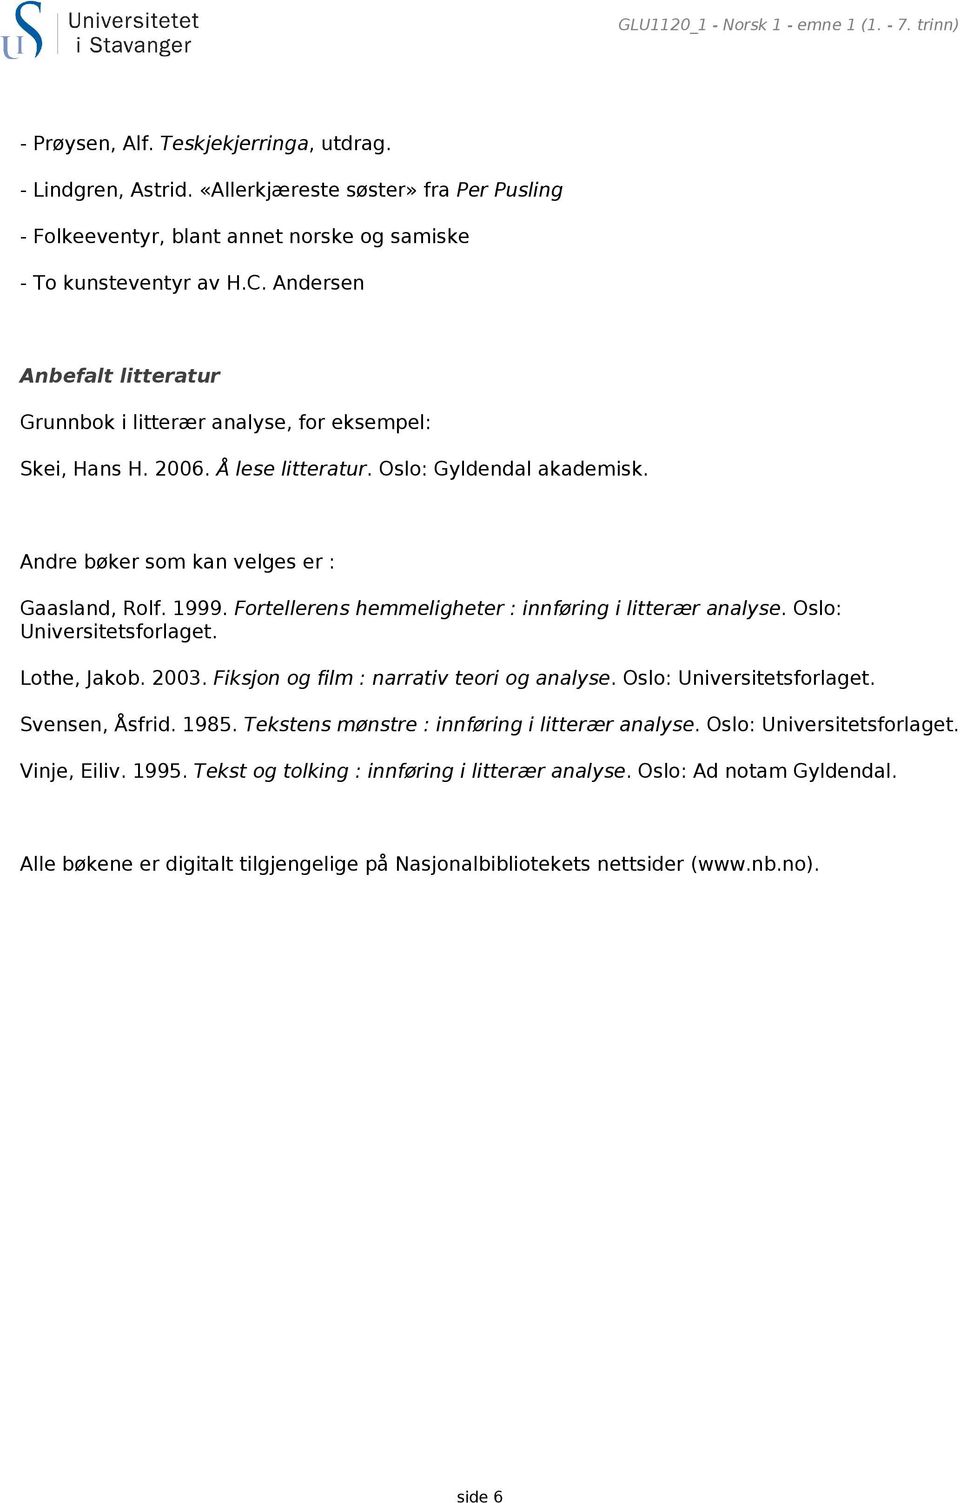 2006. Å lese litteratur. Oslo: Gyldendal akademisk. Andre bøker som kan velges er : Gaasland, Rolf. 1999. Fortellerens hemmeligheter : innføring i litterær analyse. Oslo: Universitetsforlaget.